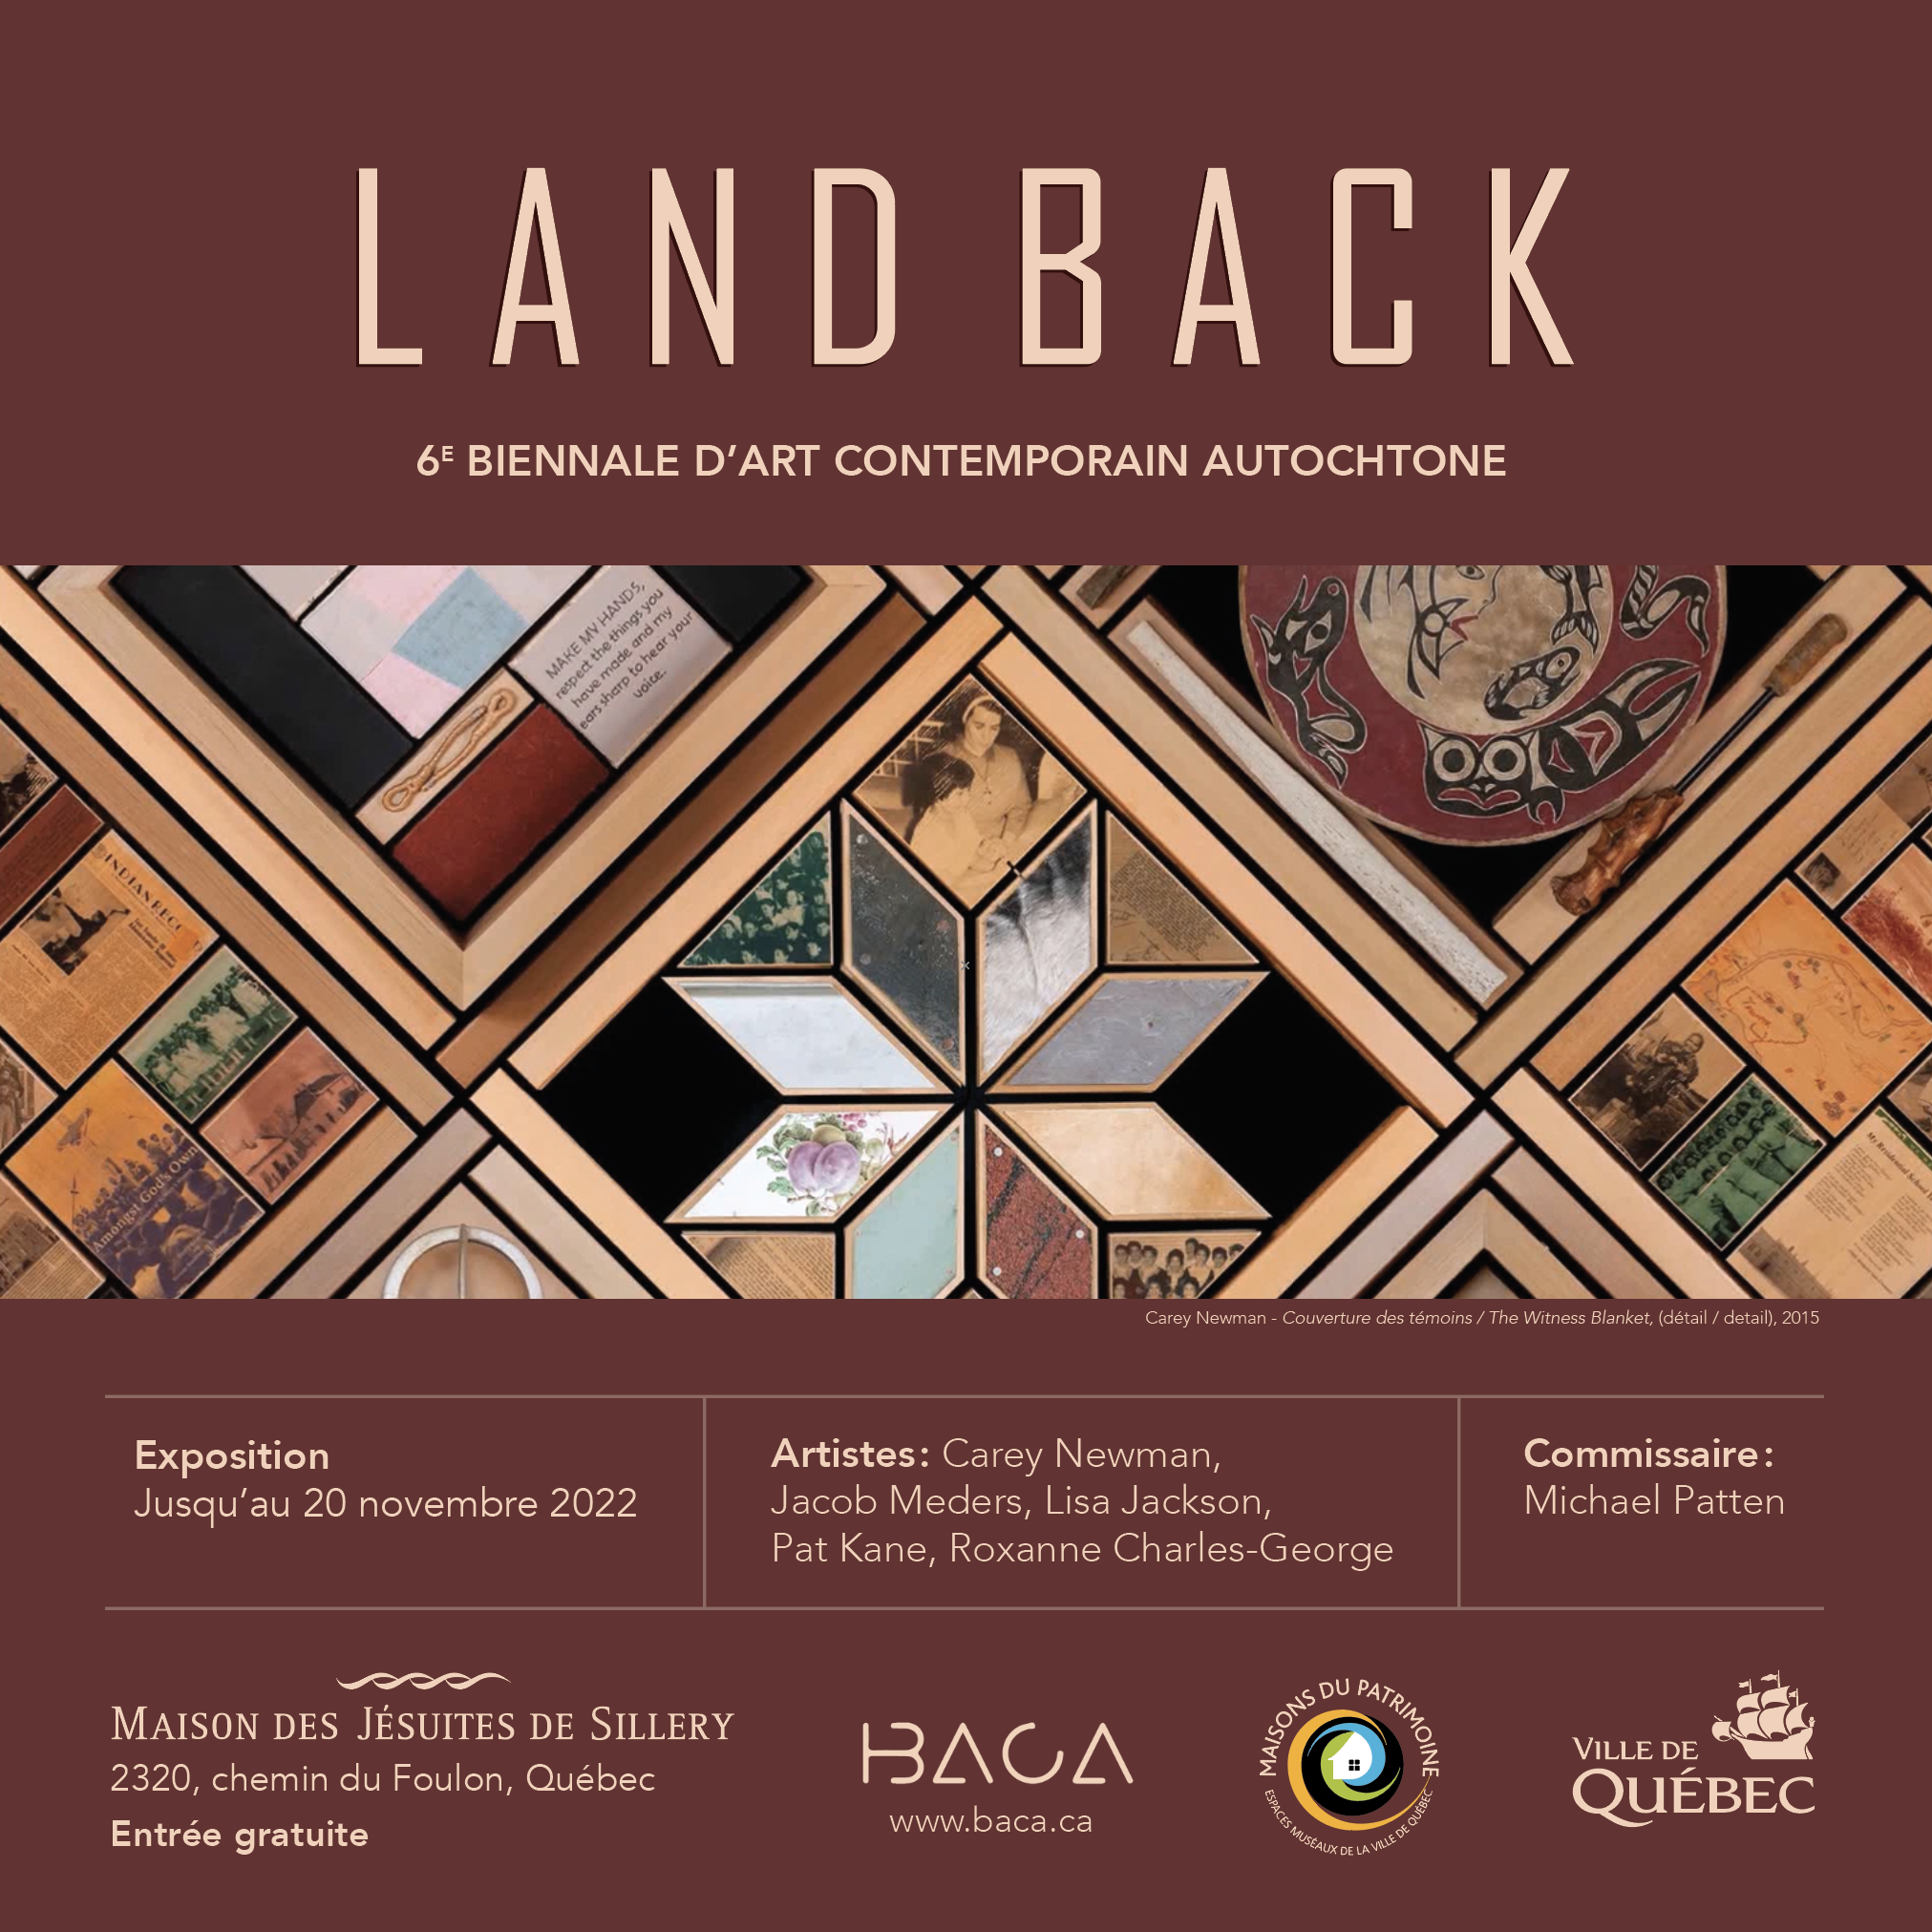 Land back: 6e biennale d’art contemporain autochtone